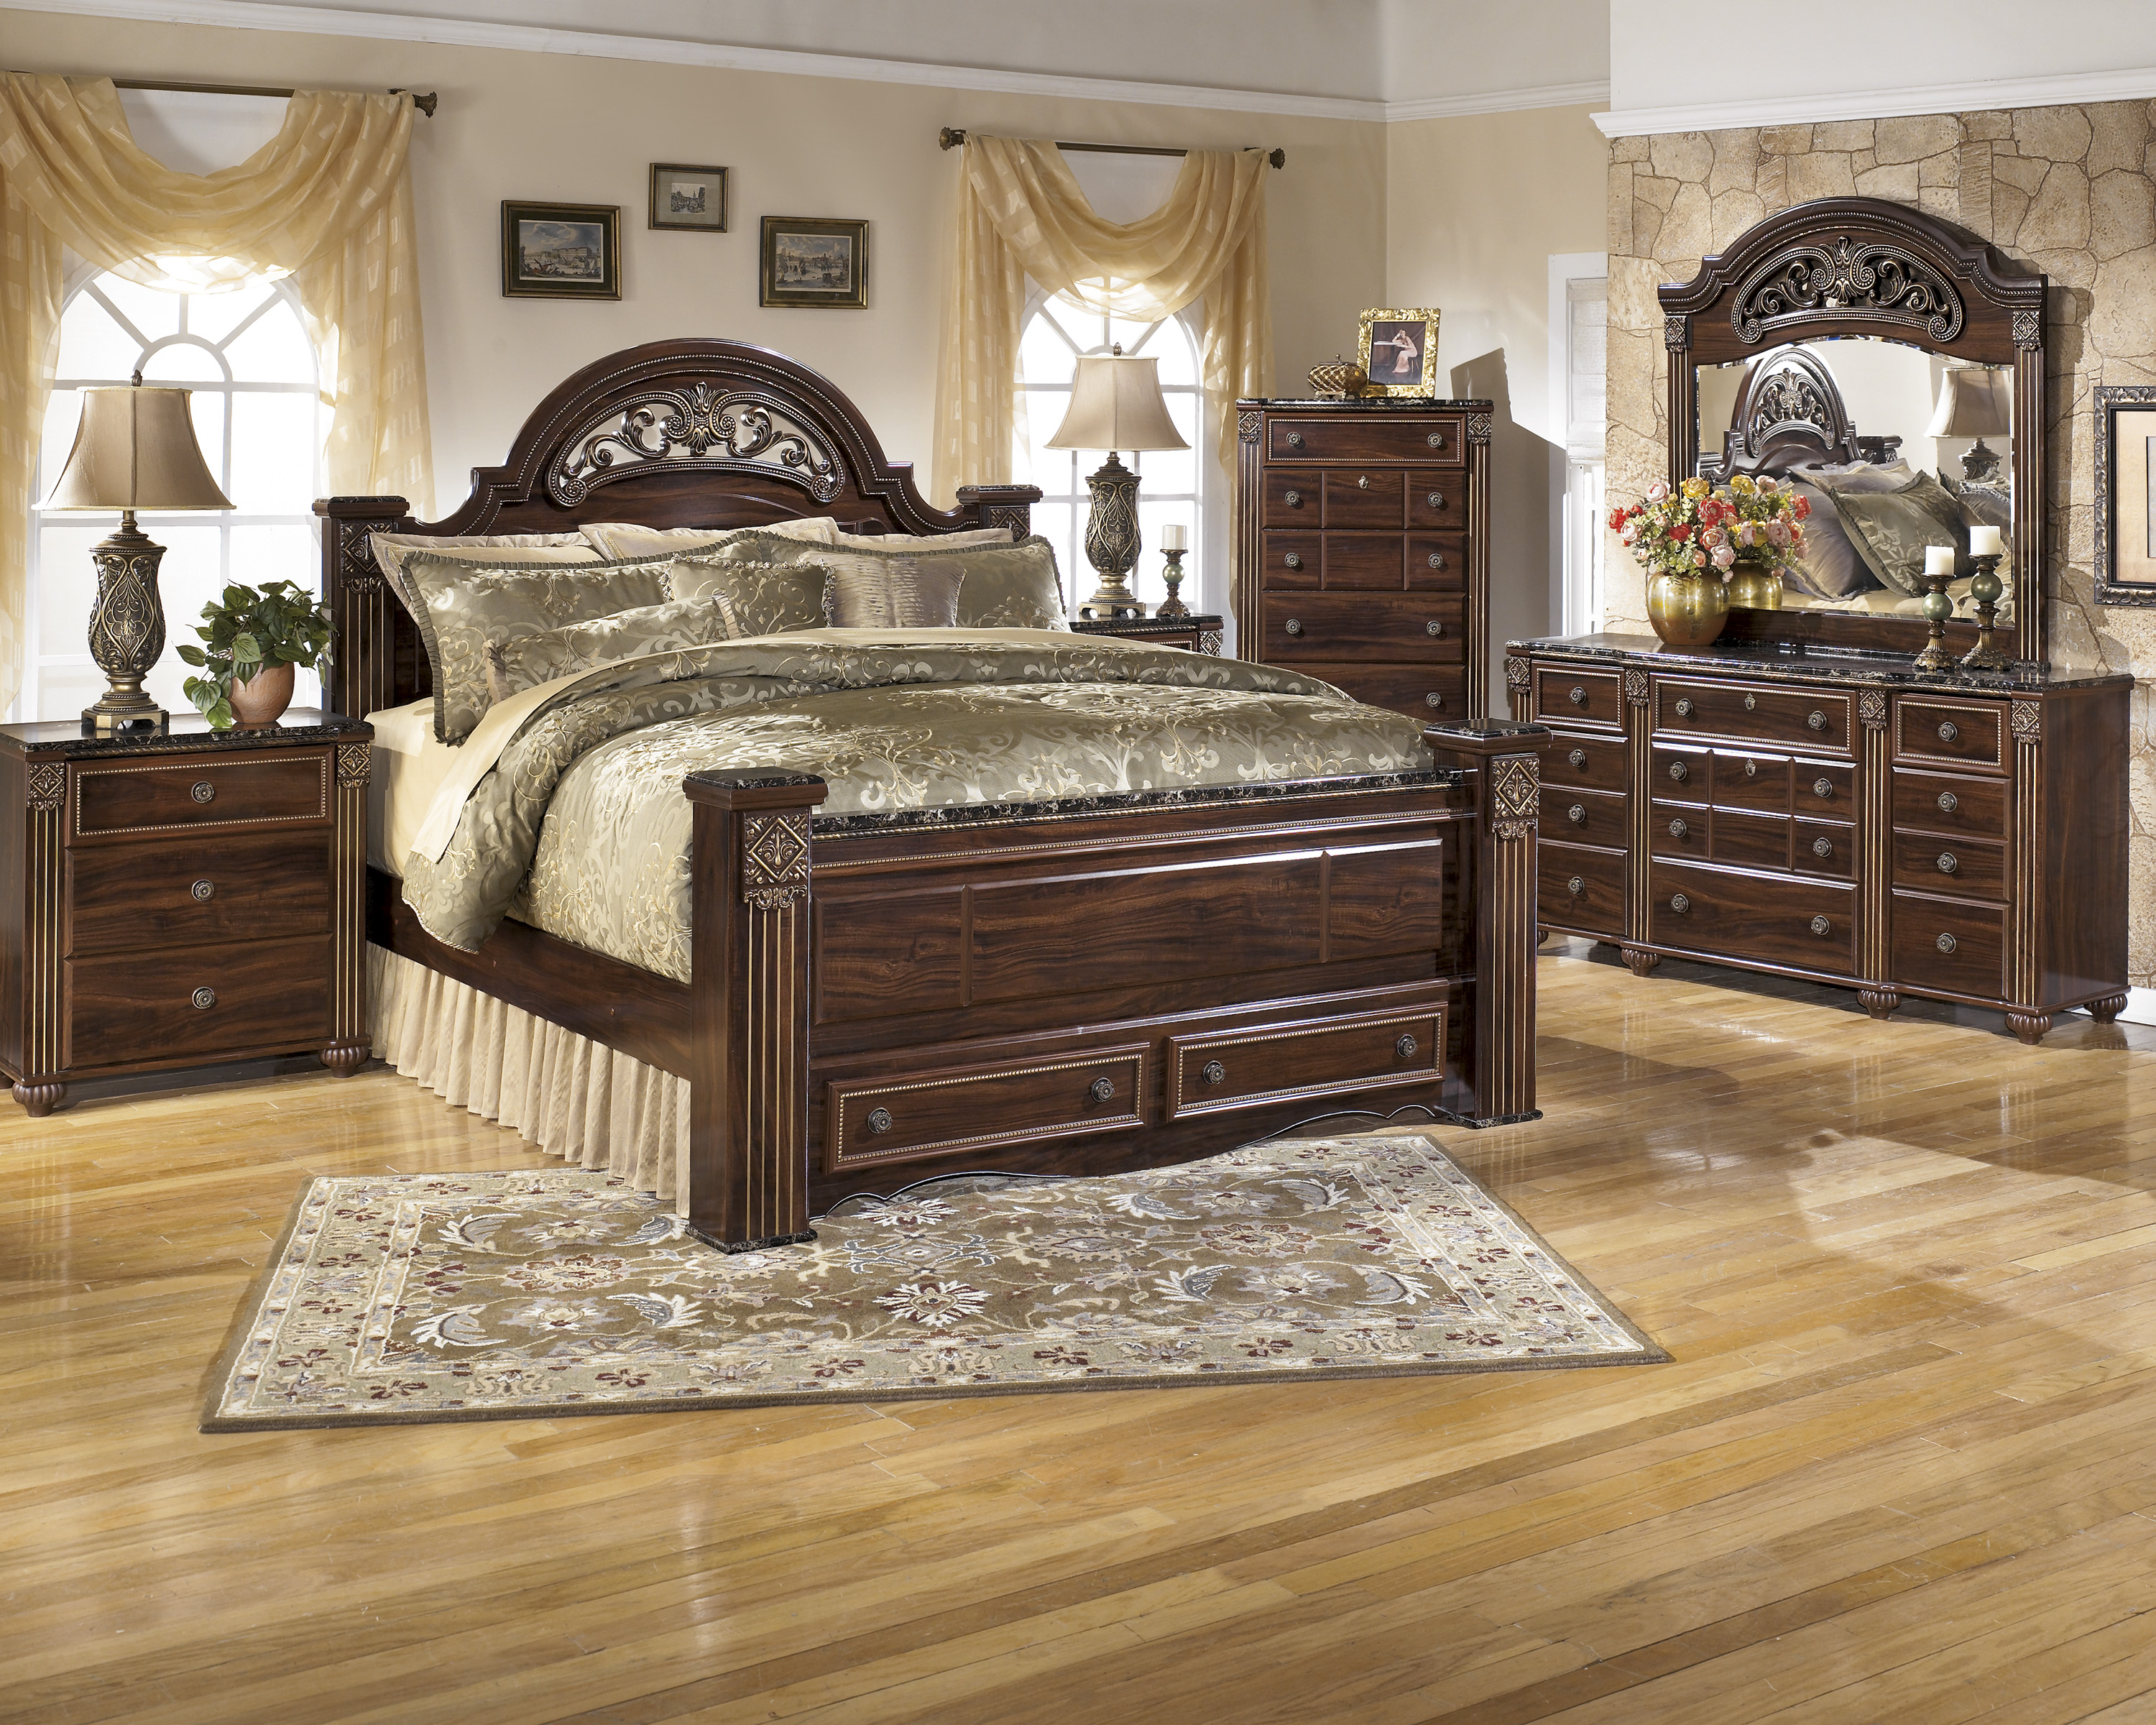 Производители мебели для спальни. Спальный комплект Габриела. B251-67-64-98 кровать Queen Size Juararo-Dark Brown. Шикарный спальный гарнитур.